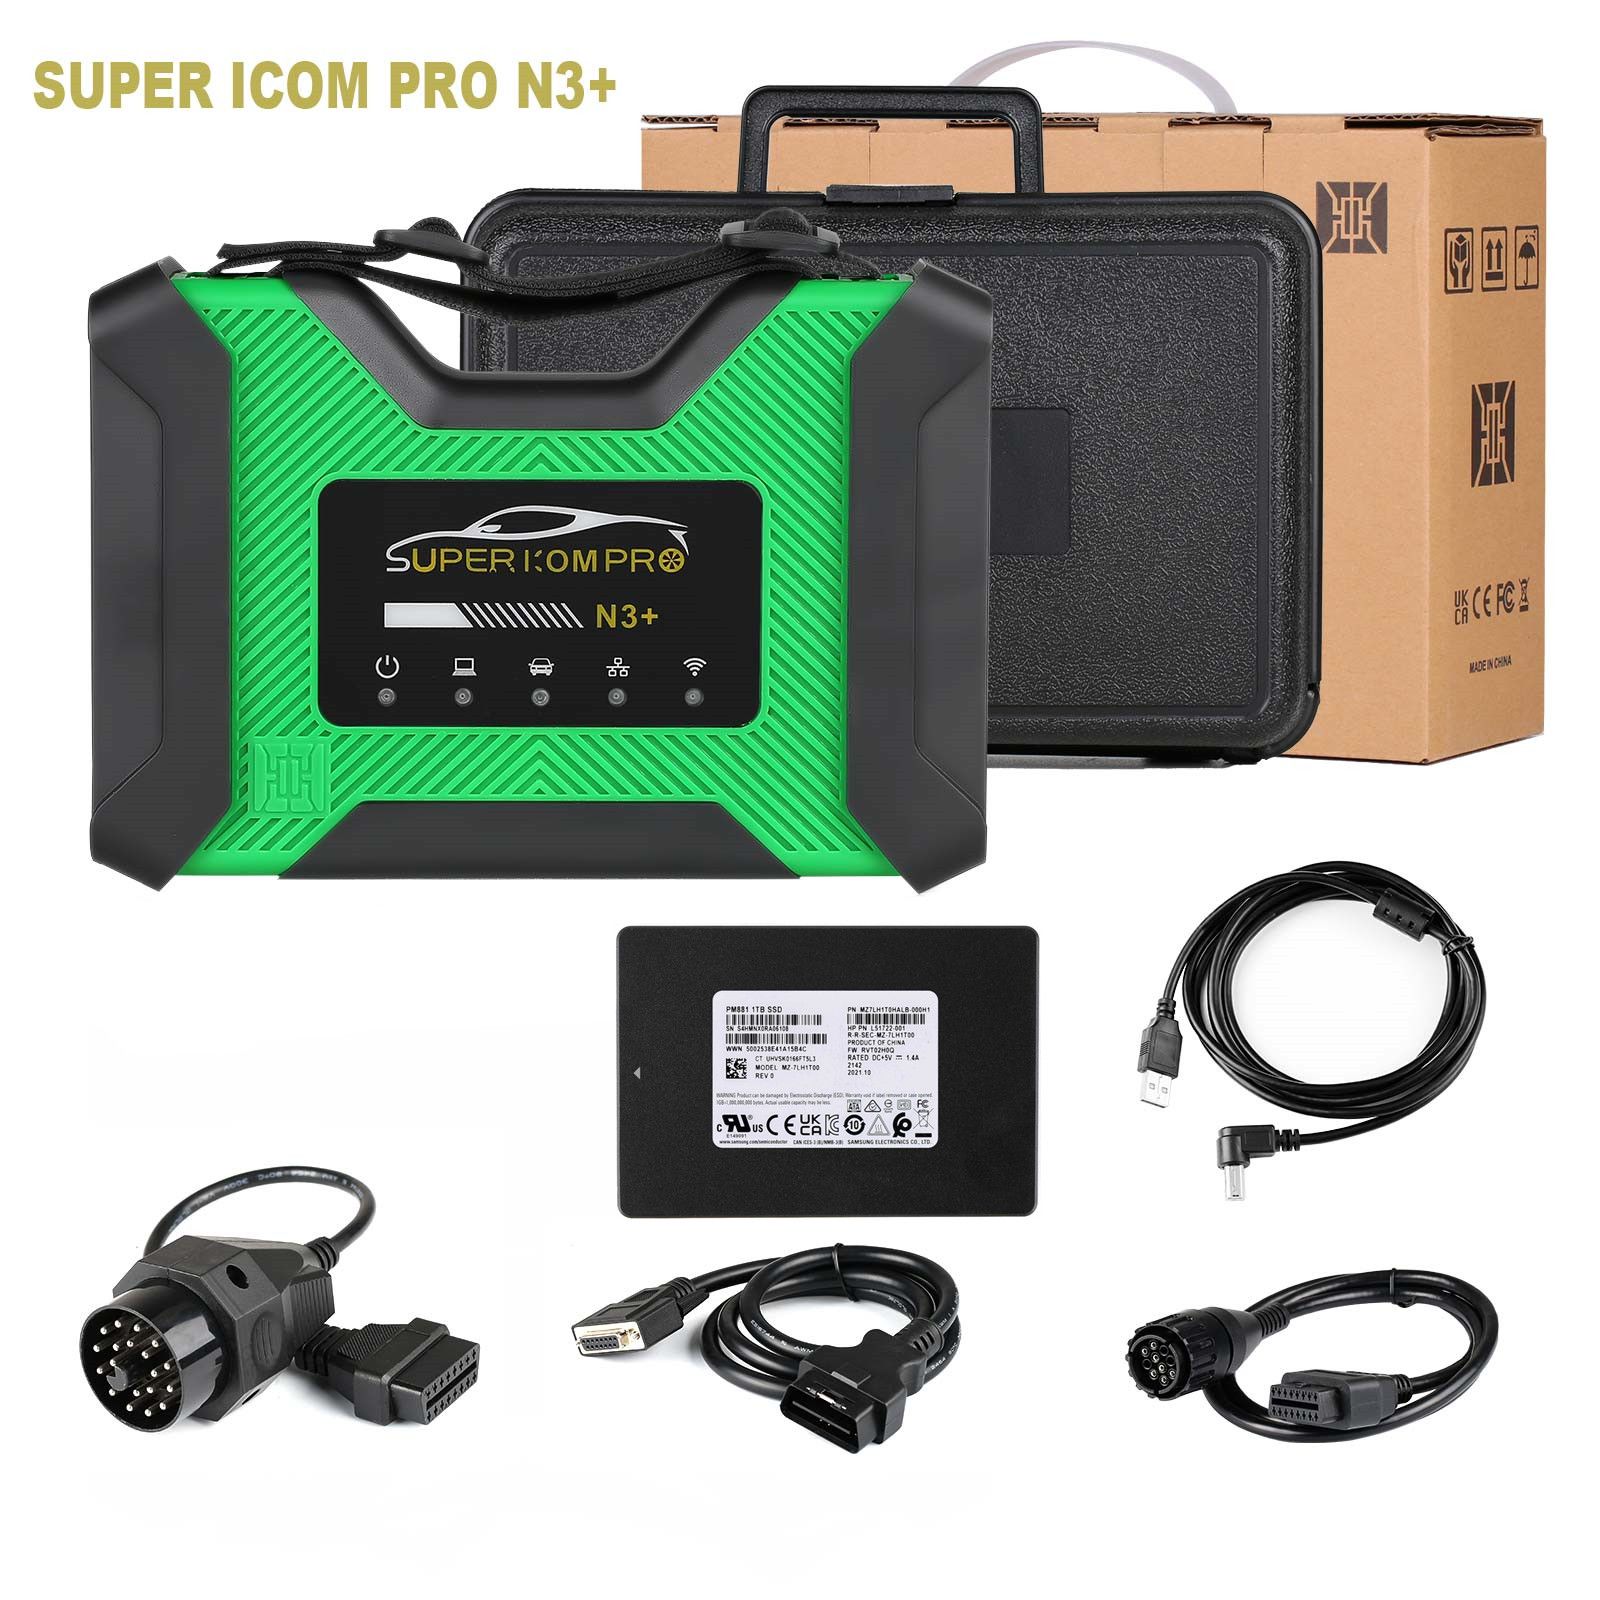 SUPER ICOM PRO N3+BMW 스캐너 전체 구성, V2023.3 BMW ICOM 소프트웨어 1TB SSD ISTA-D 4.39.31 ISTA-P 3.71.0.200, 엔지니어 프로그래밍